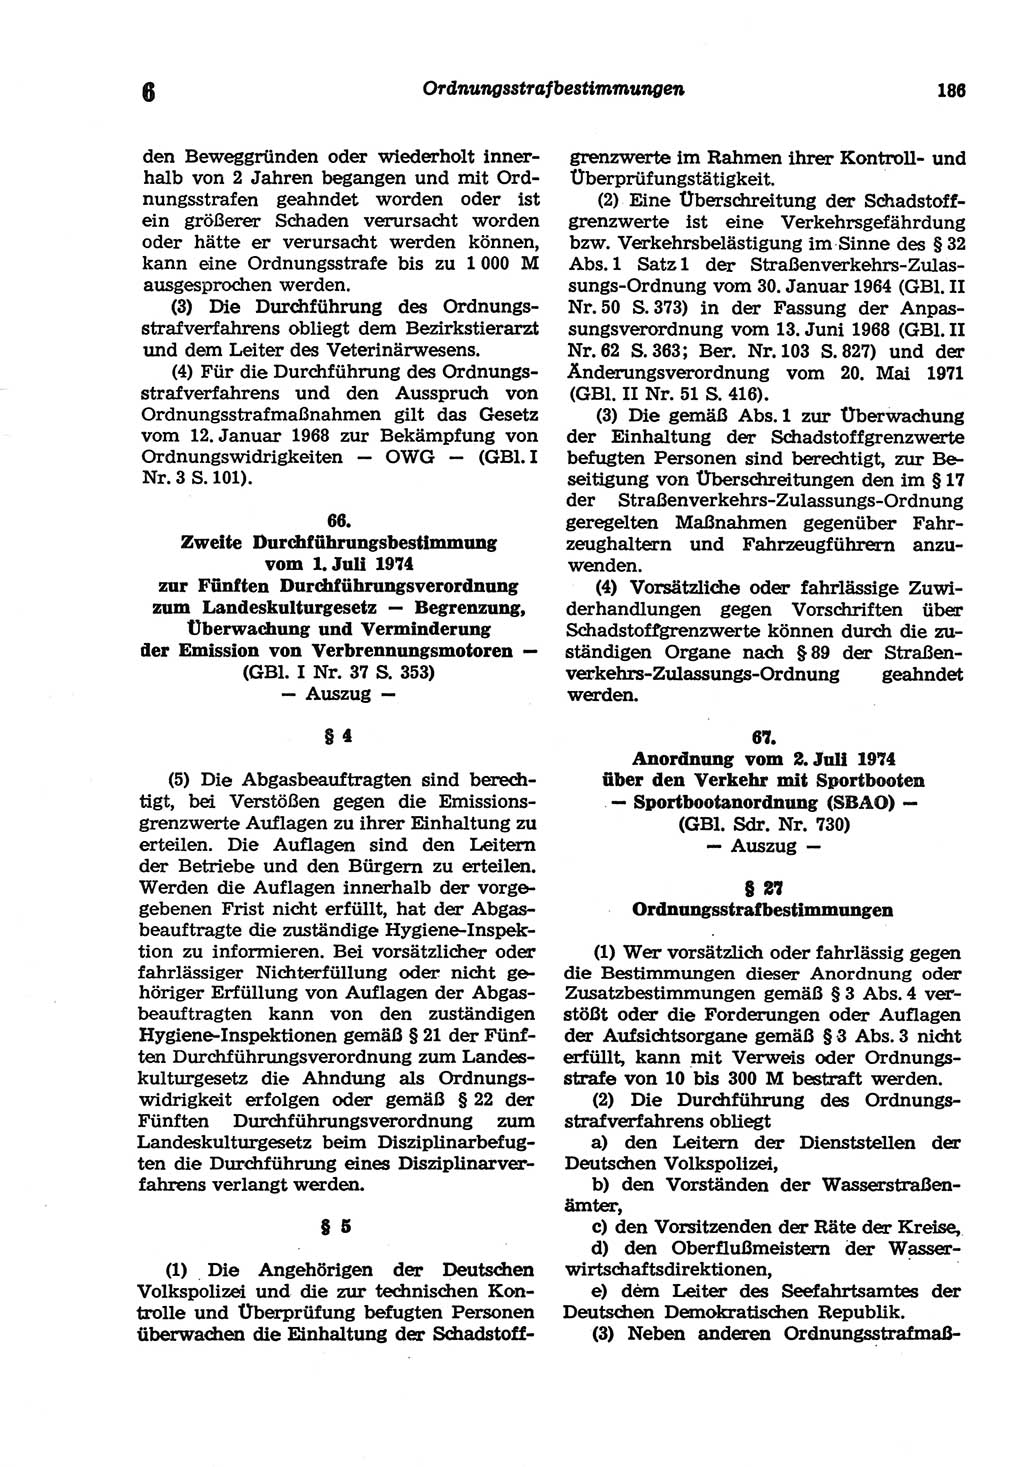 Strafgesetzbuch (StGB) der Deutschen Demokratischen Republik (DDR) und angrenzende Gesetze und Bestimmungen 1977, Seite 186 (StGB DDR Ges. Best. 1977, S. 186)